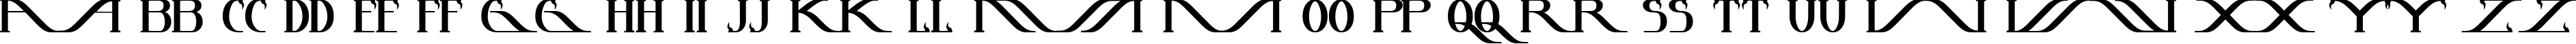 Пример написания английского алфавита шрифтом InstantTunes